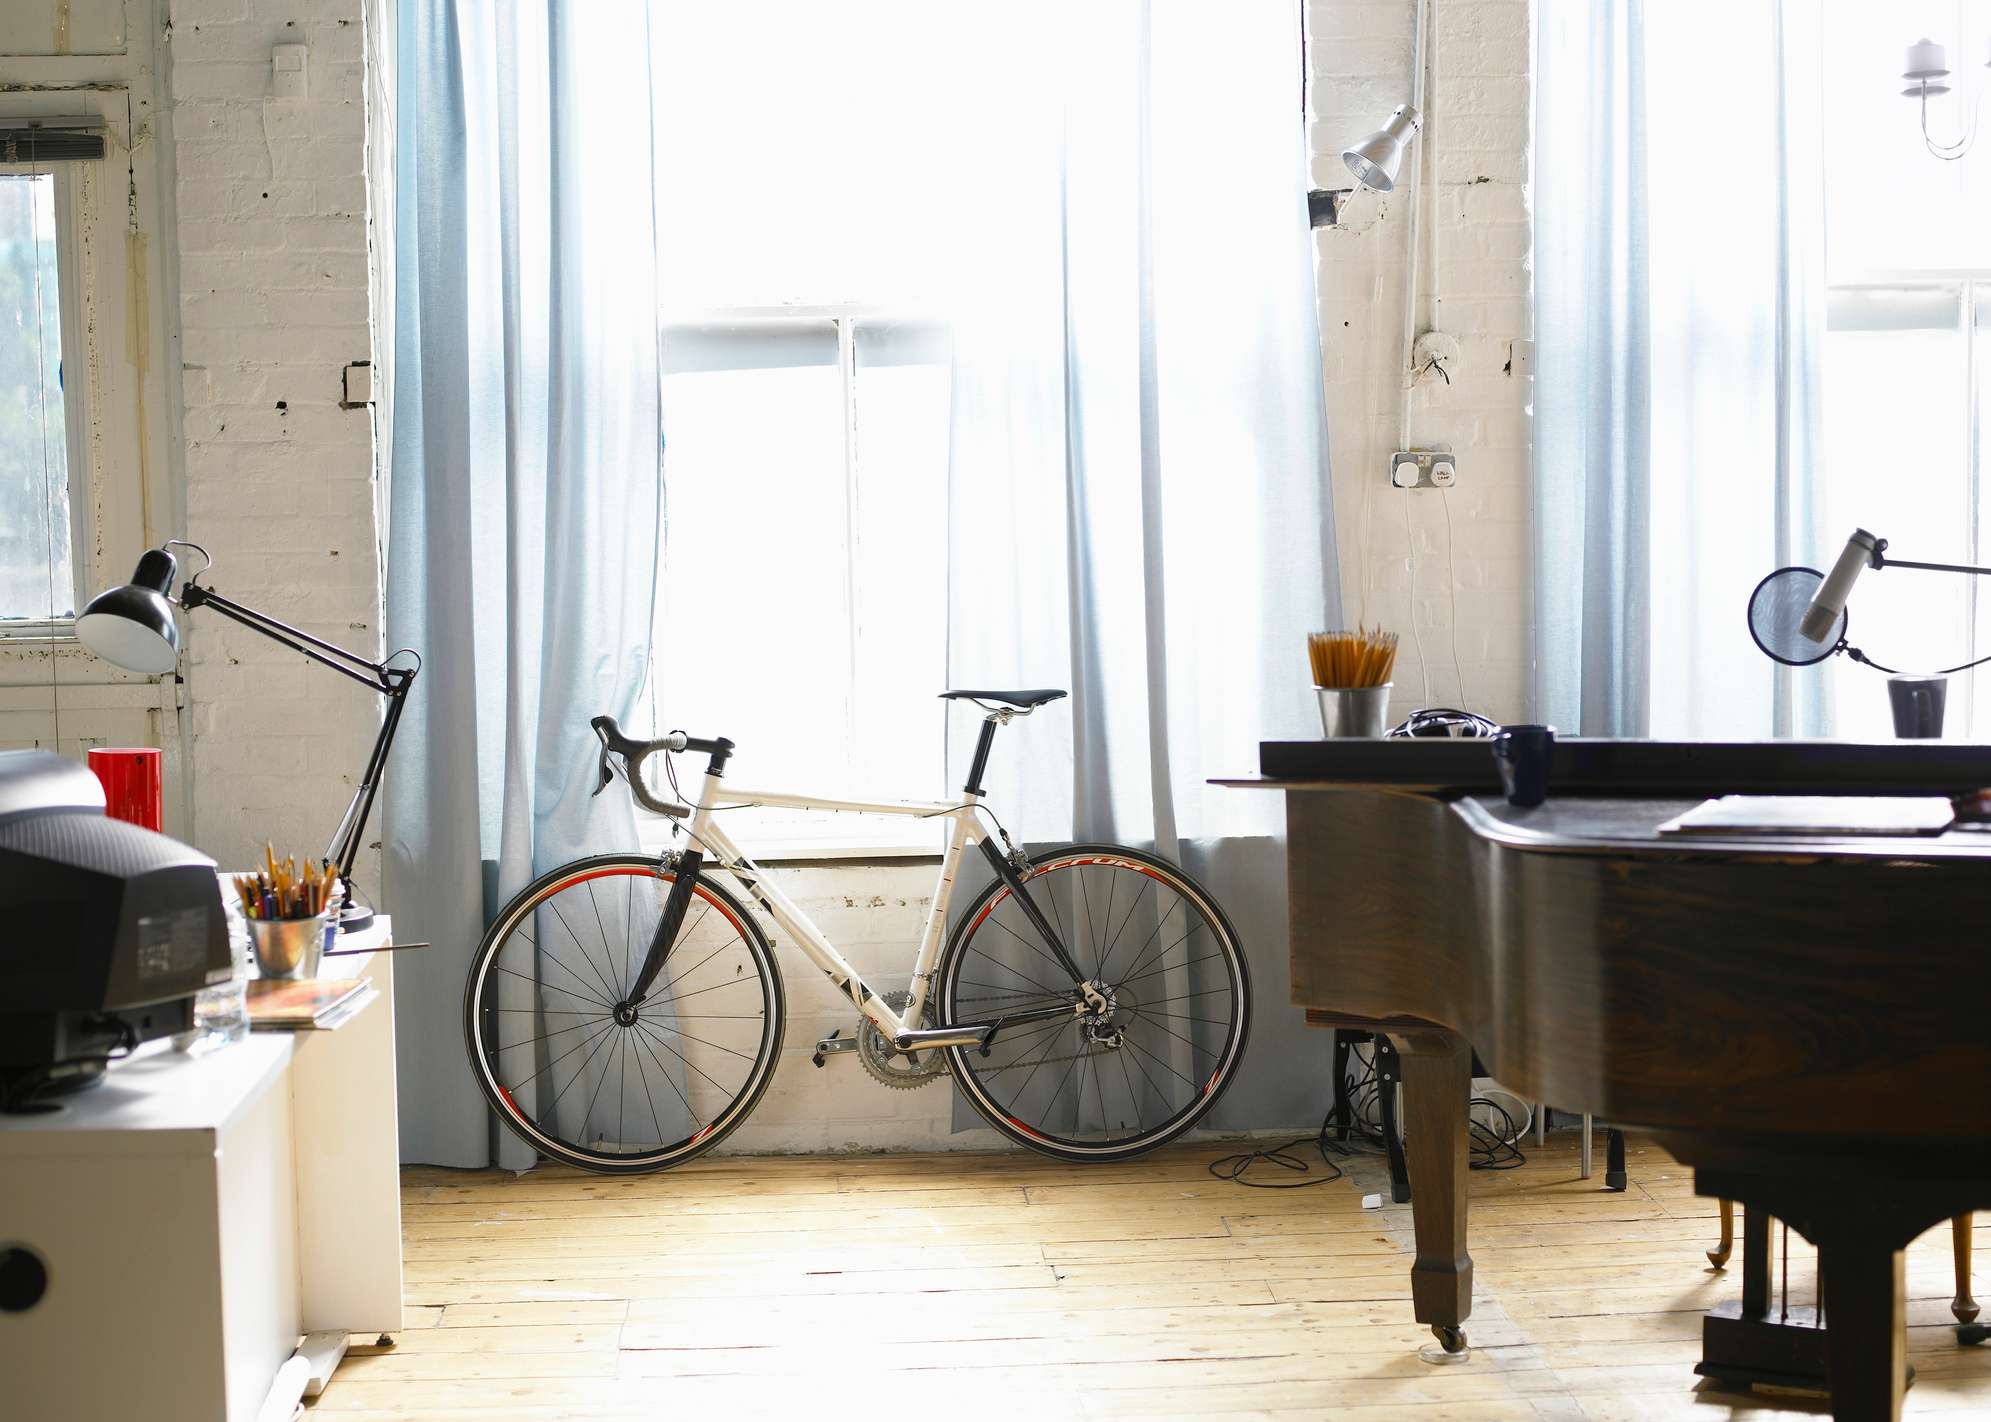 Innenraum einer Wohnung mit Fahrrad, Flügel und Schreibtisch